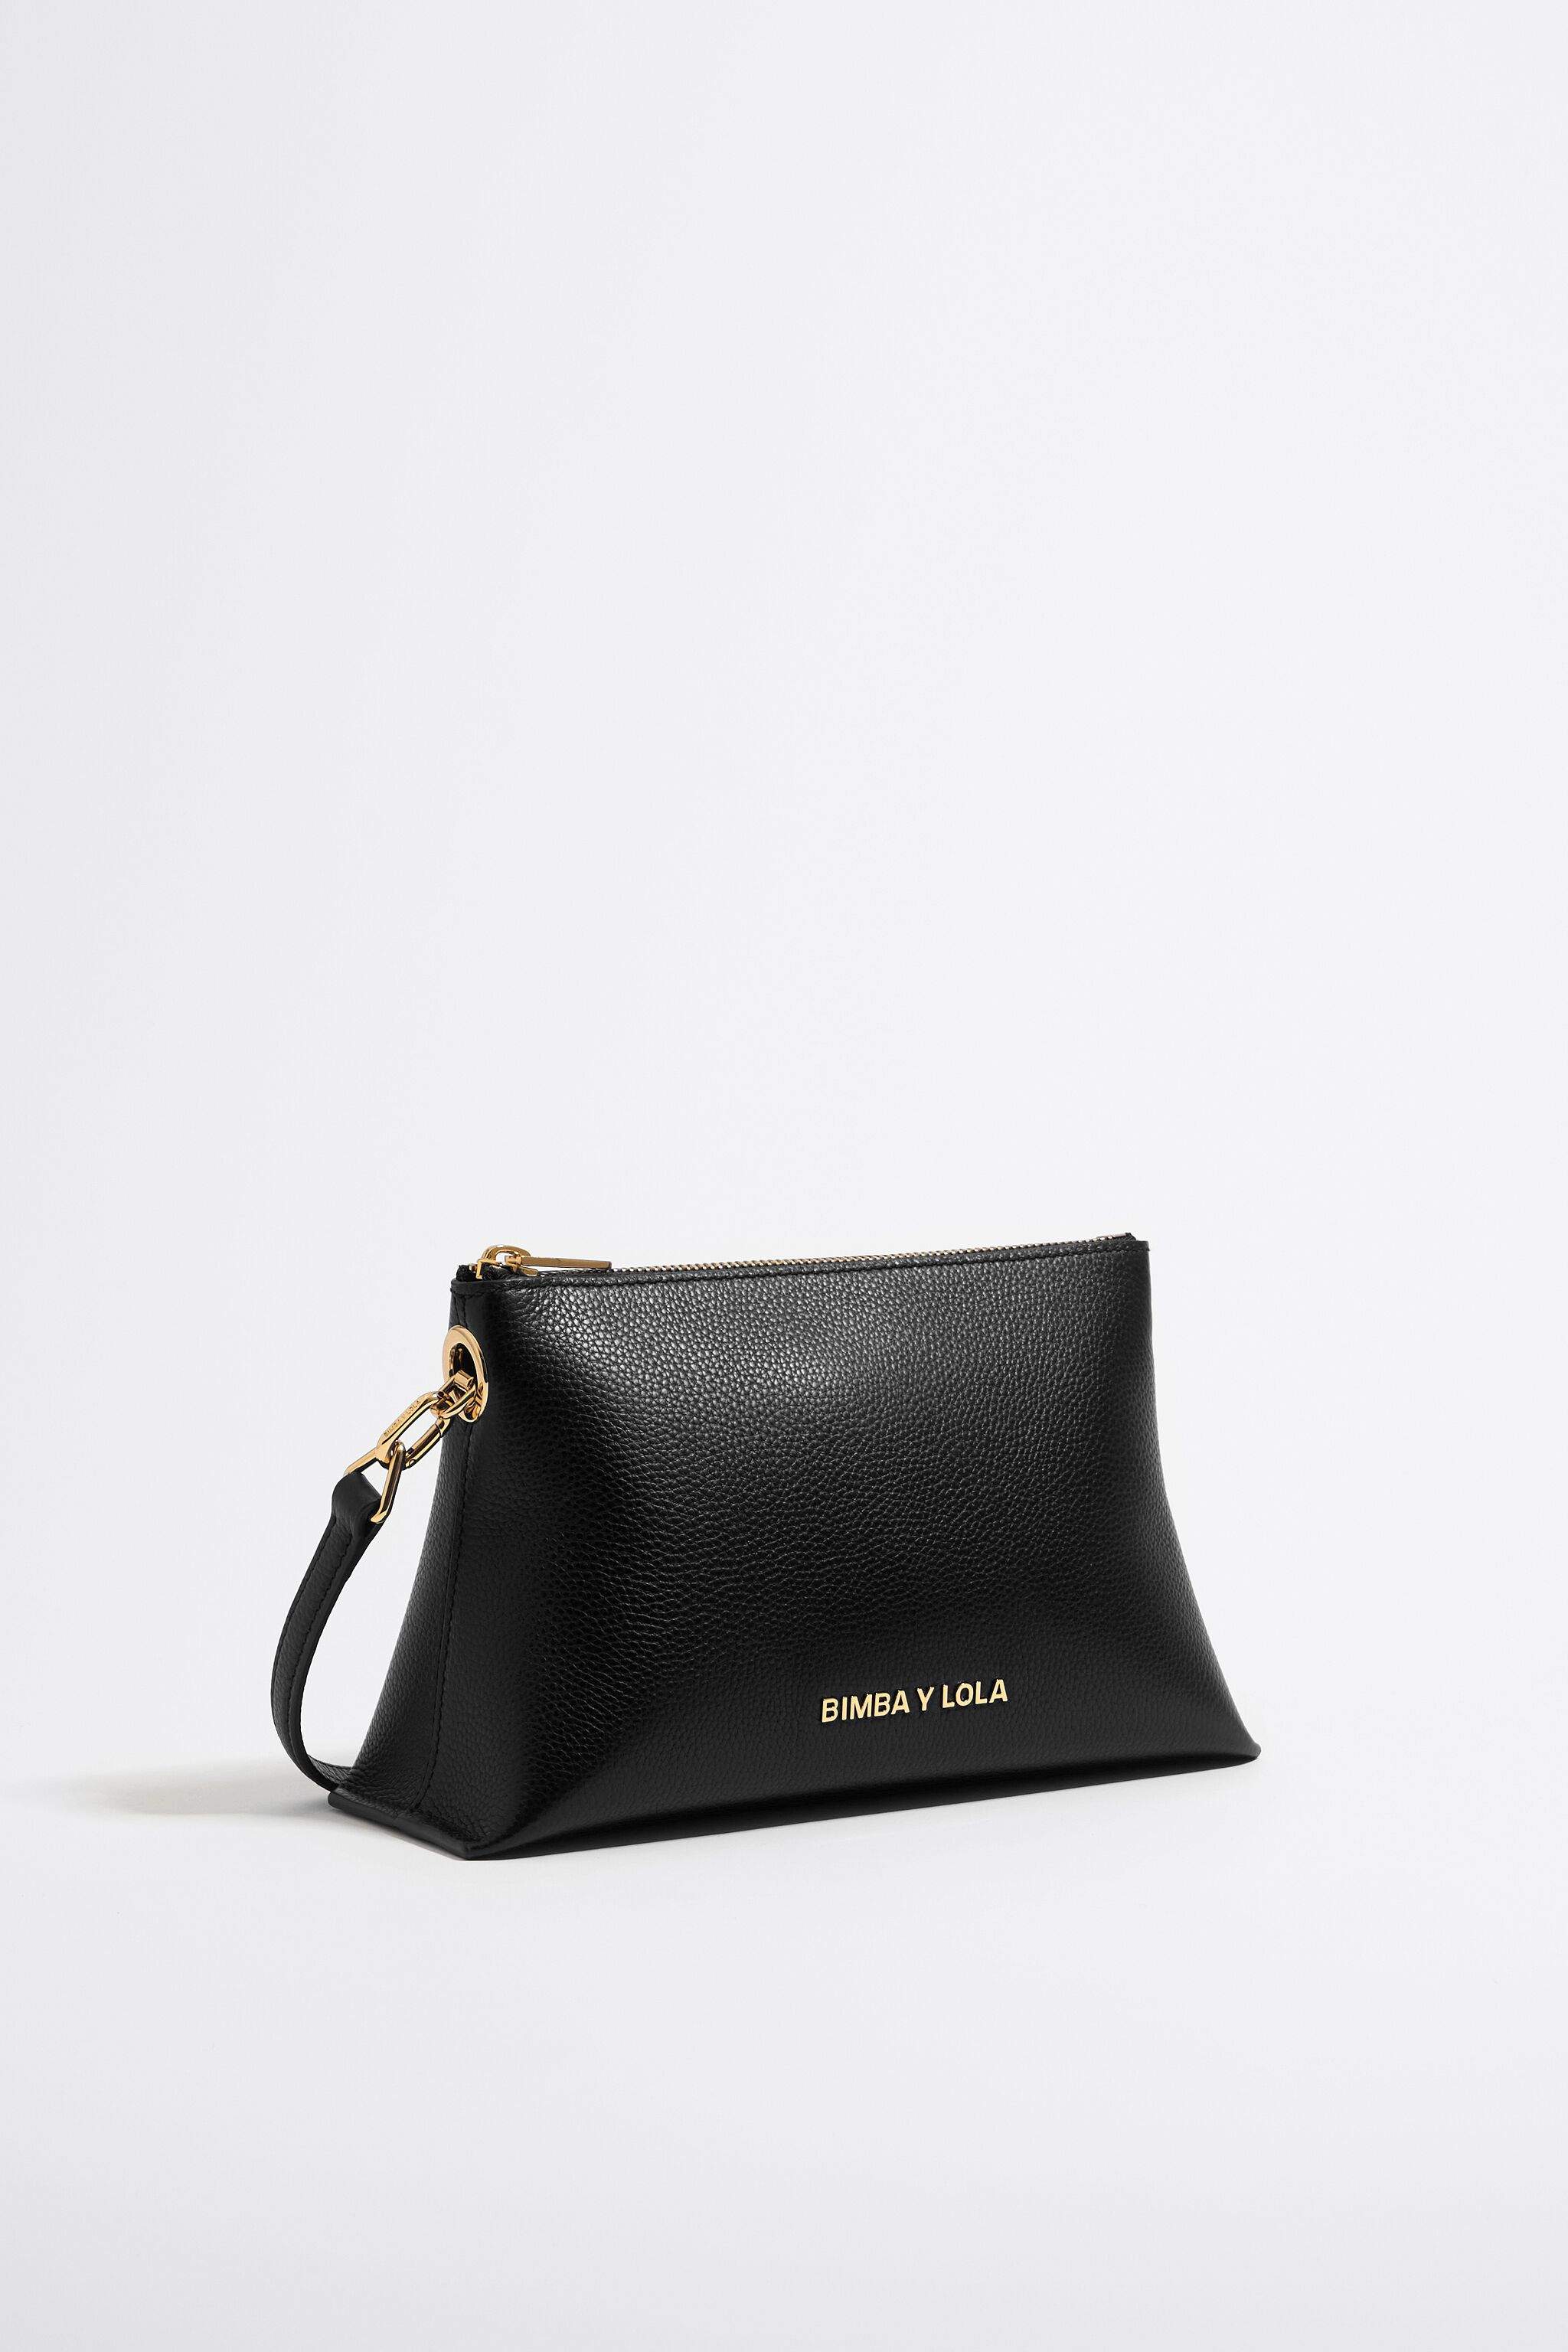 Small black leather trapezium bag